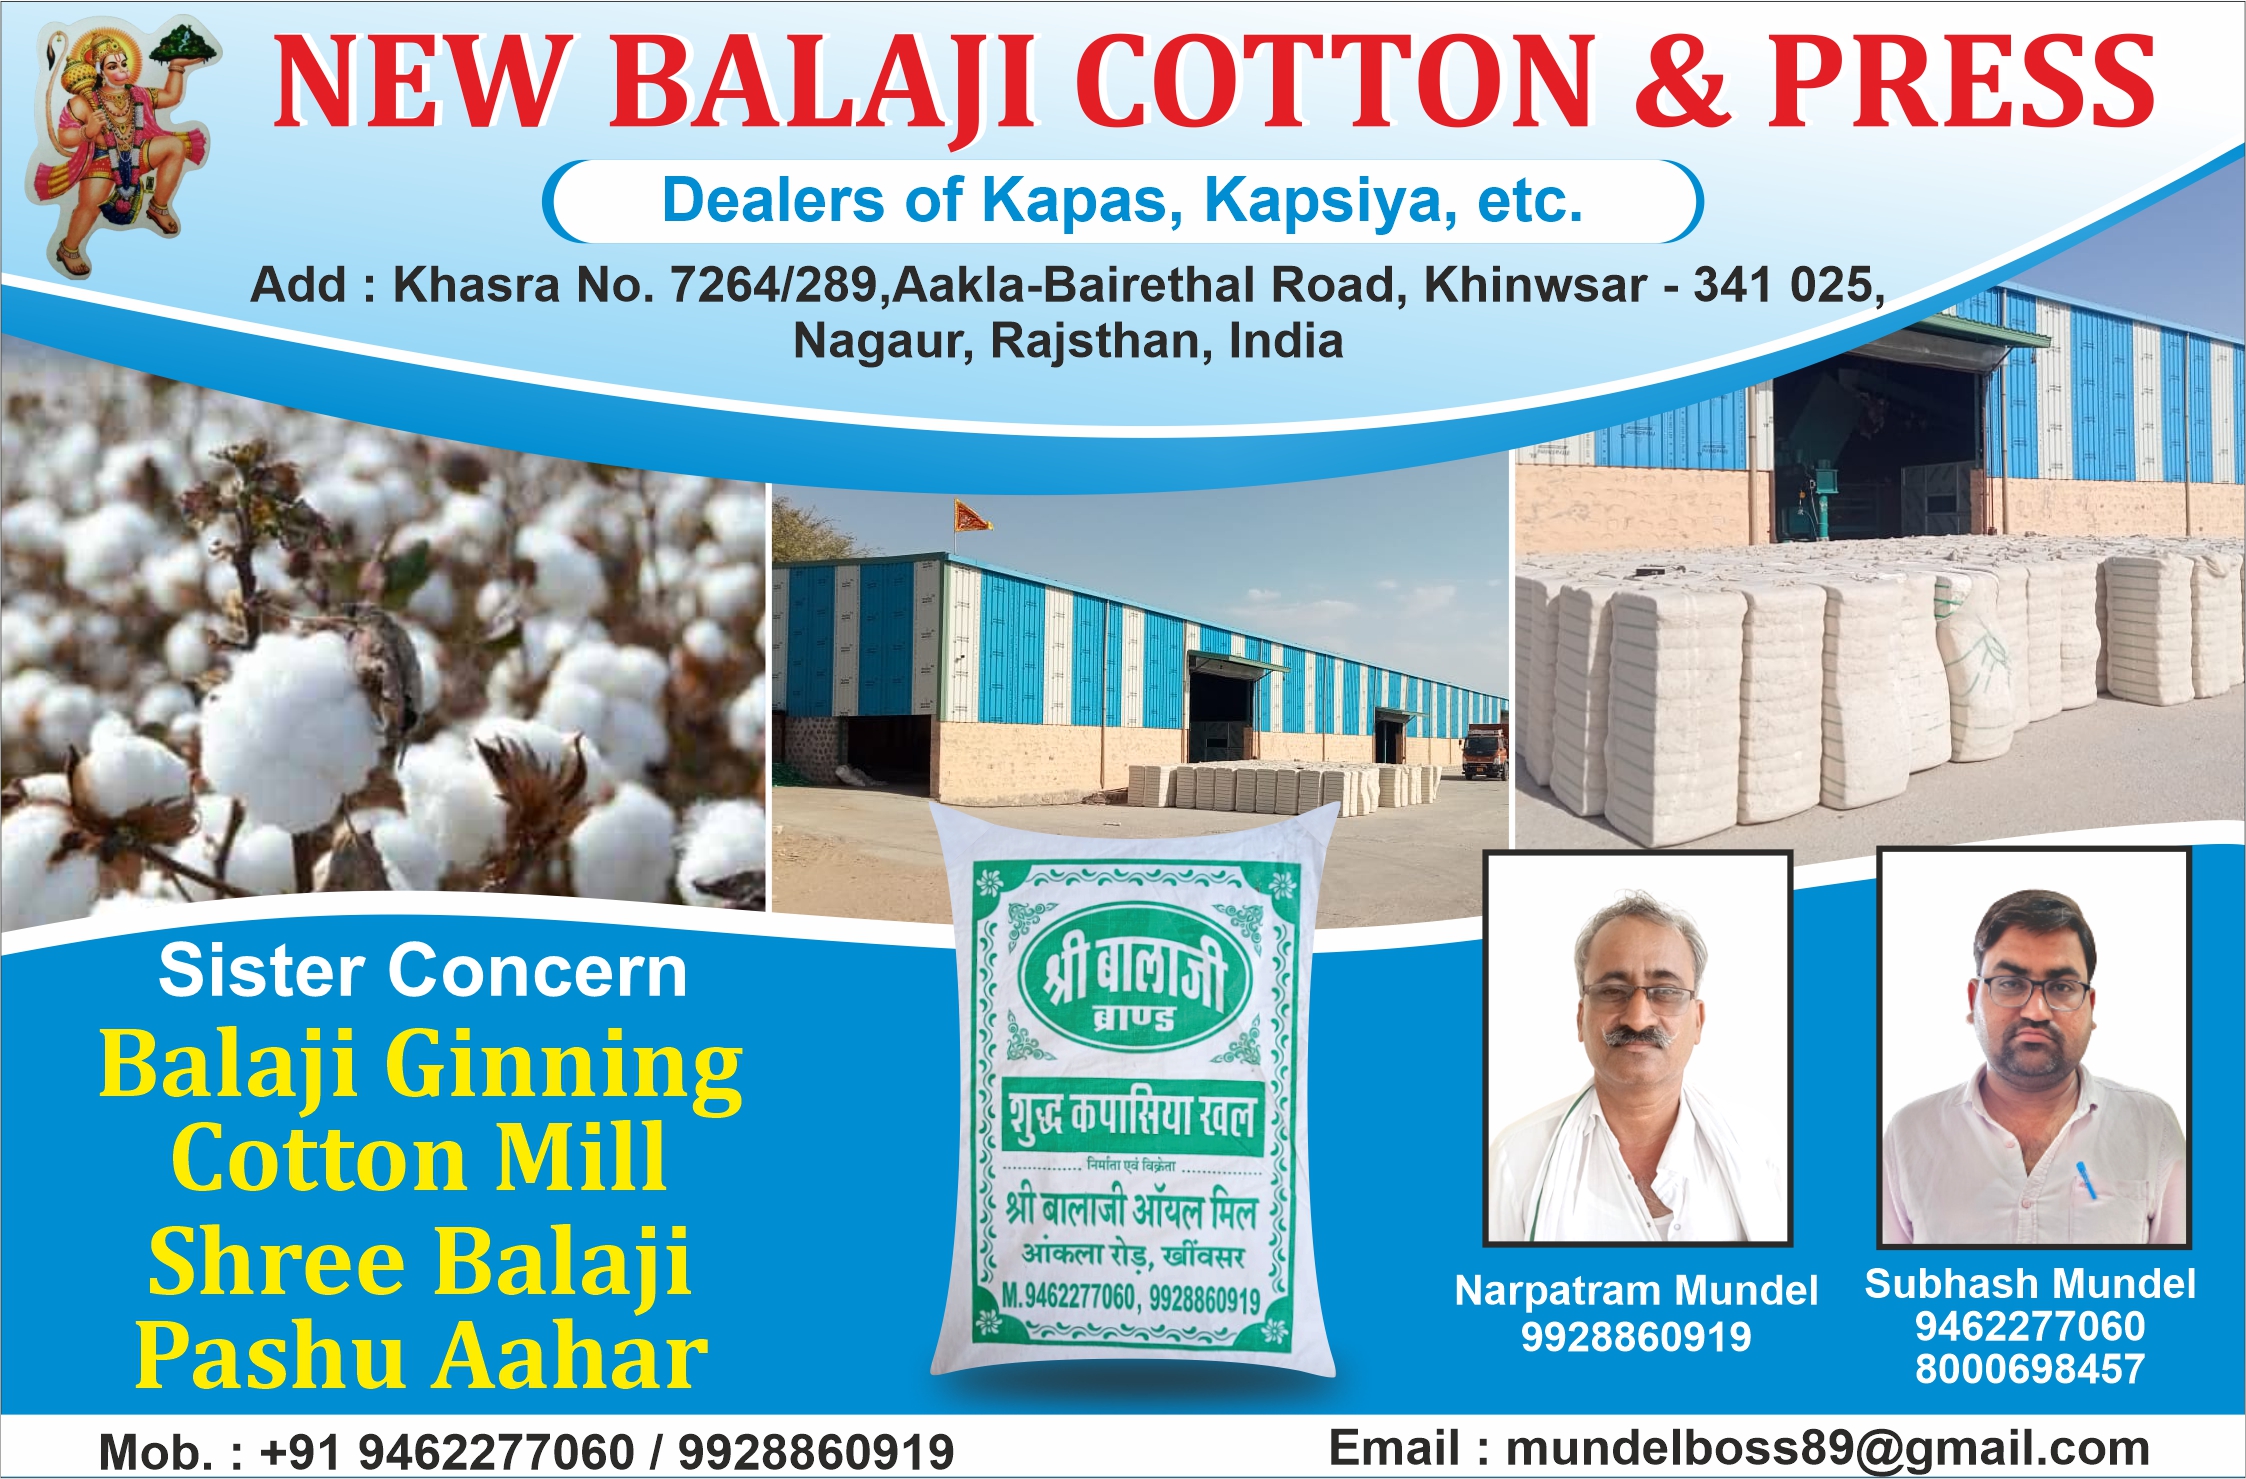 New Balaji Cotton & Prees